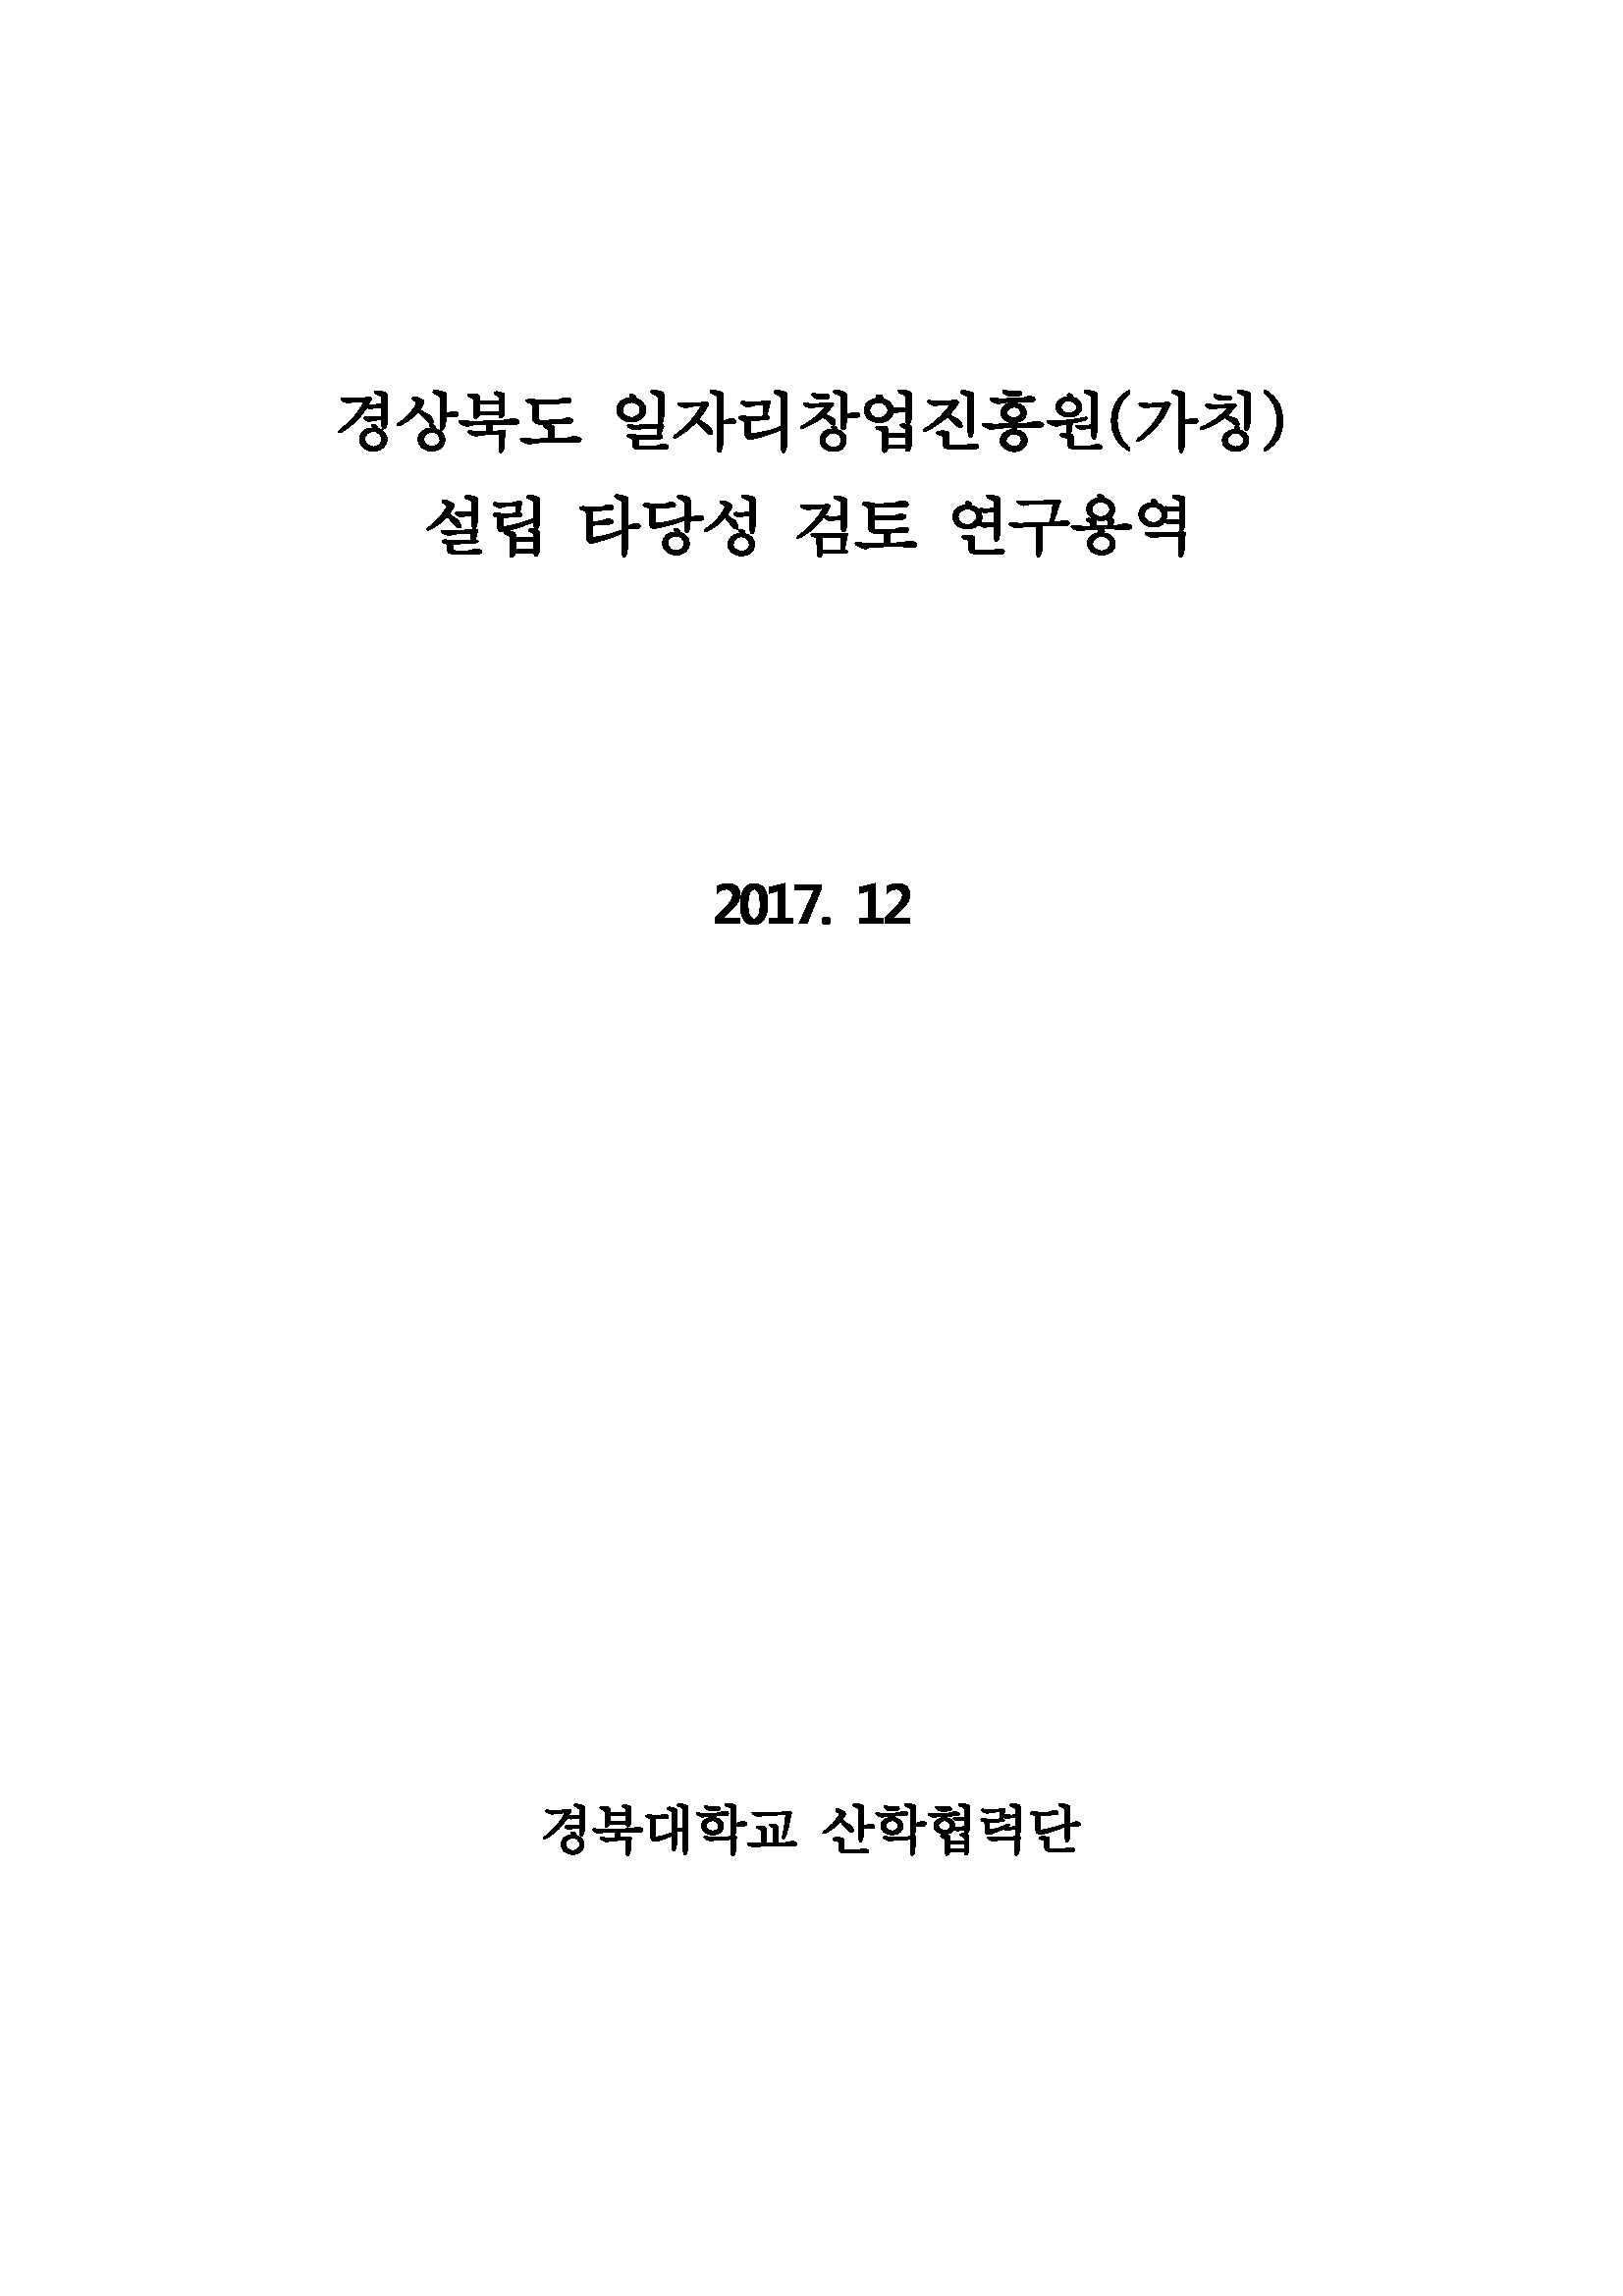 경상북도 일자리창업진흥원(가칭) 설립 타당성 검토 연구용역